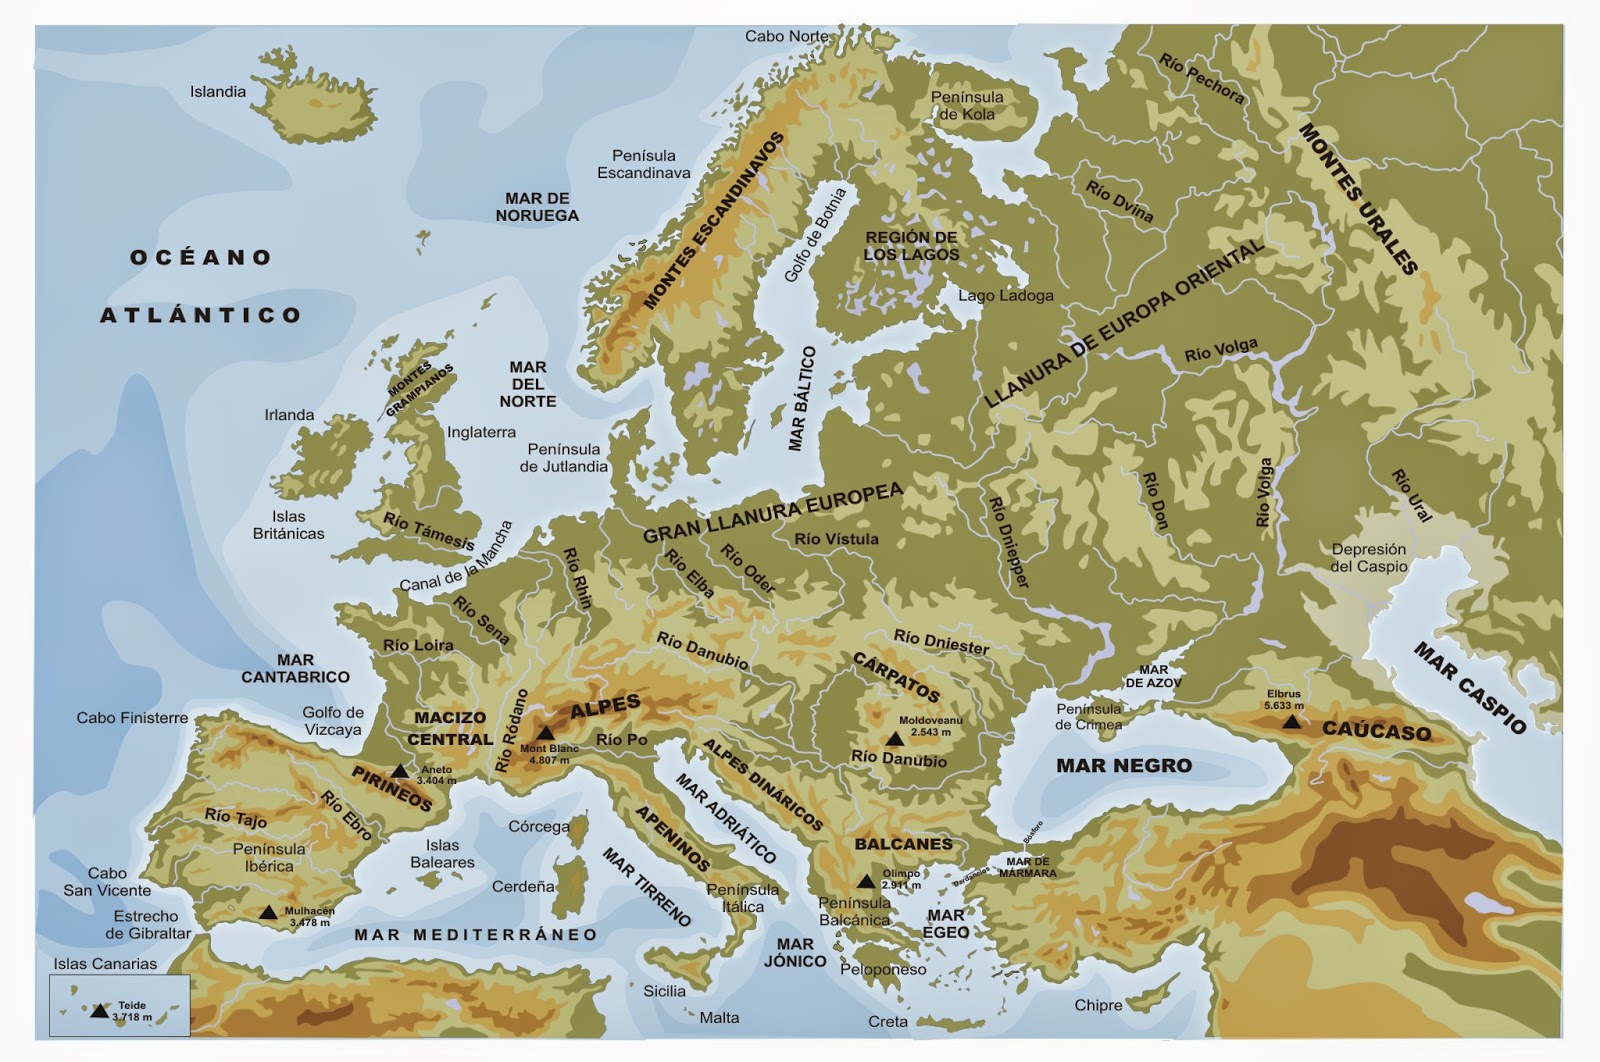 Donde esta chipre en el mapa de europa